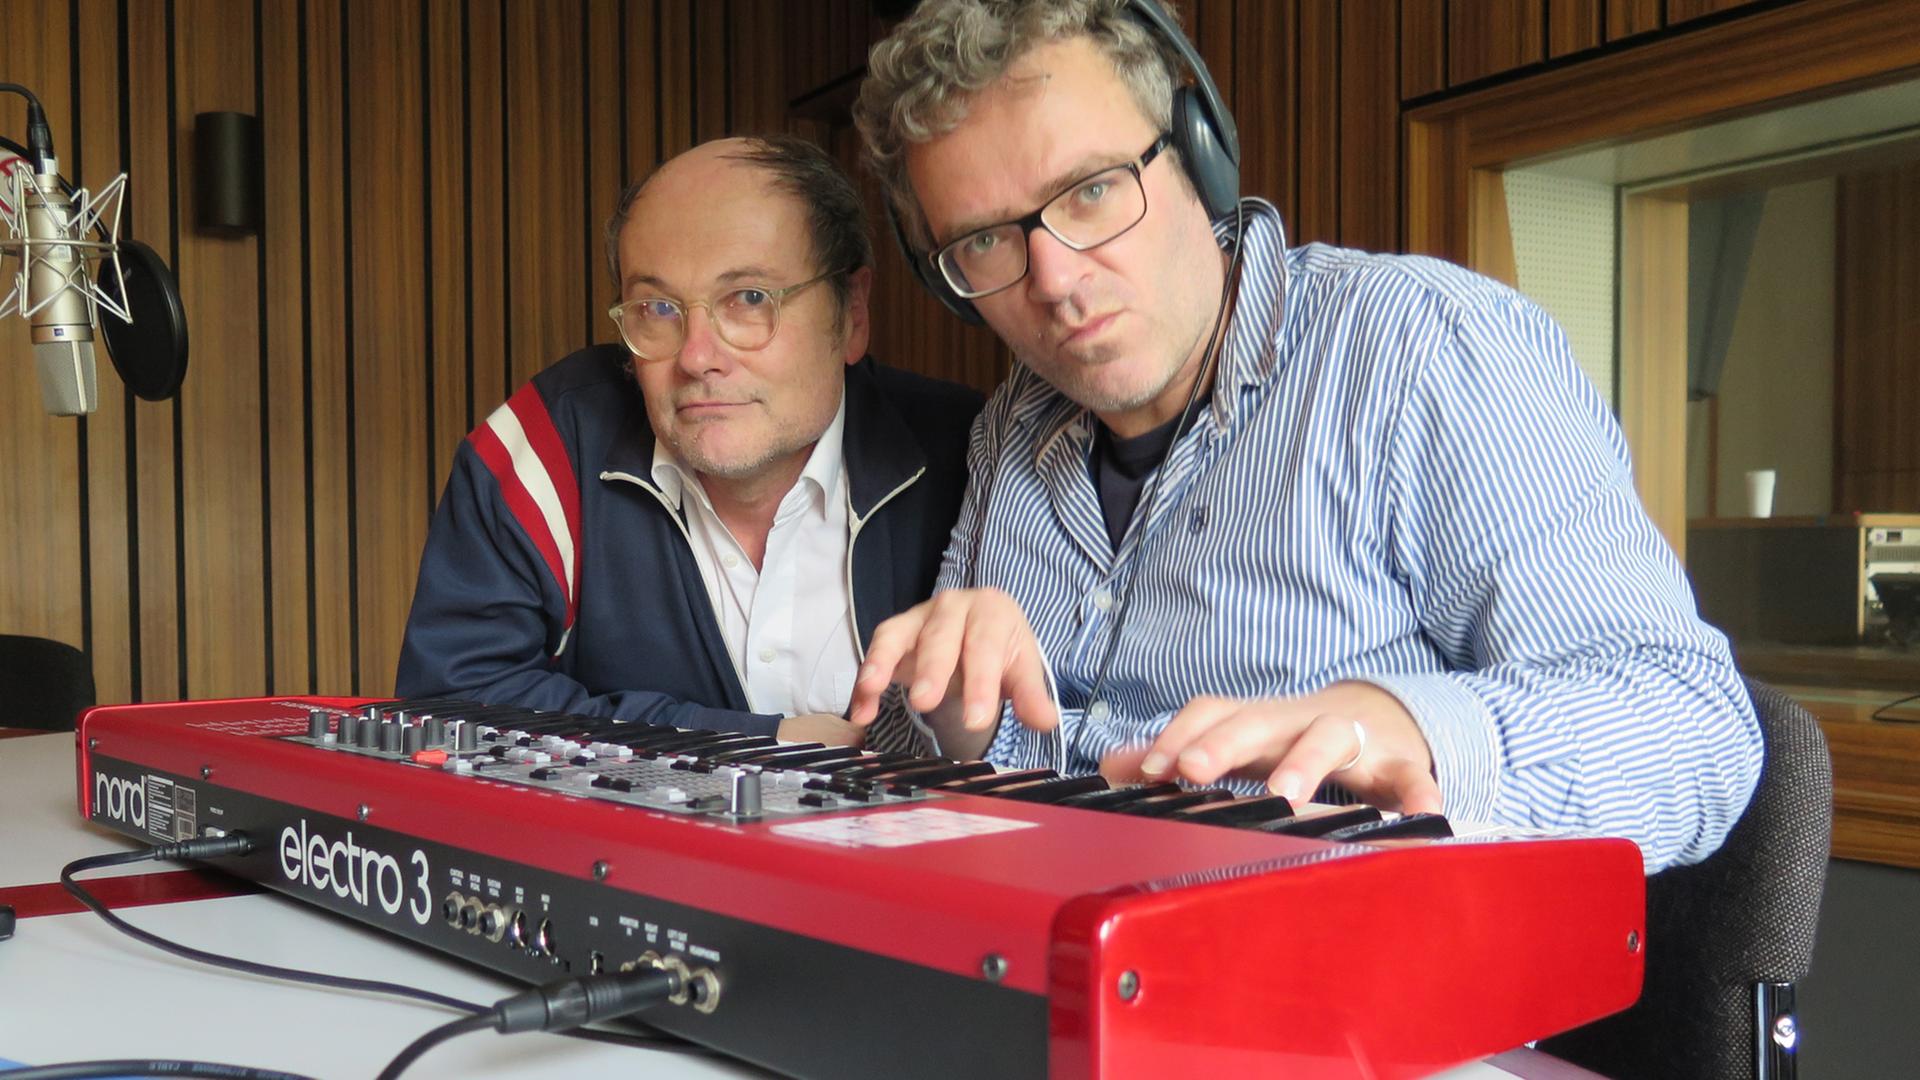 Musik und Kabarett - Pigor & Eichhorn zu Gast im Funkhaus von Deutschlandradio Kultur. Beide lehnen hinter einem roten Keyboard und schauen in die Kamera.